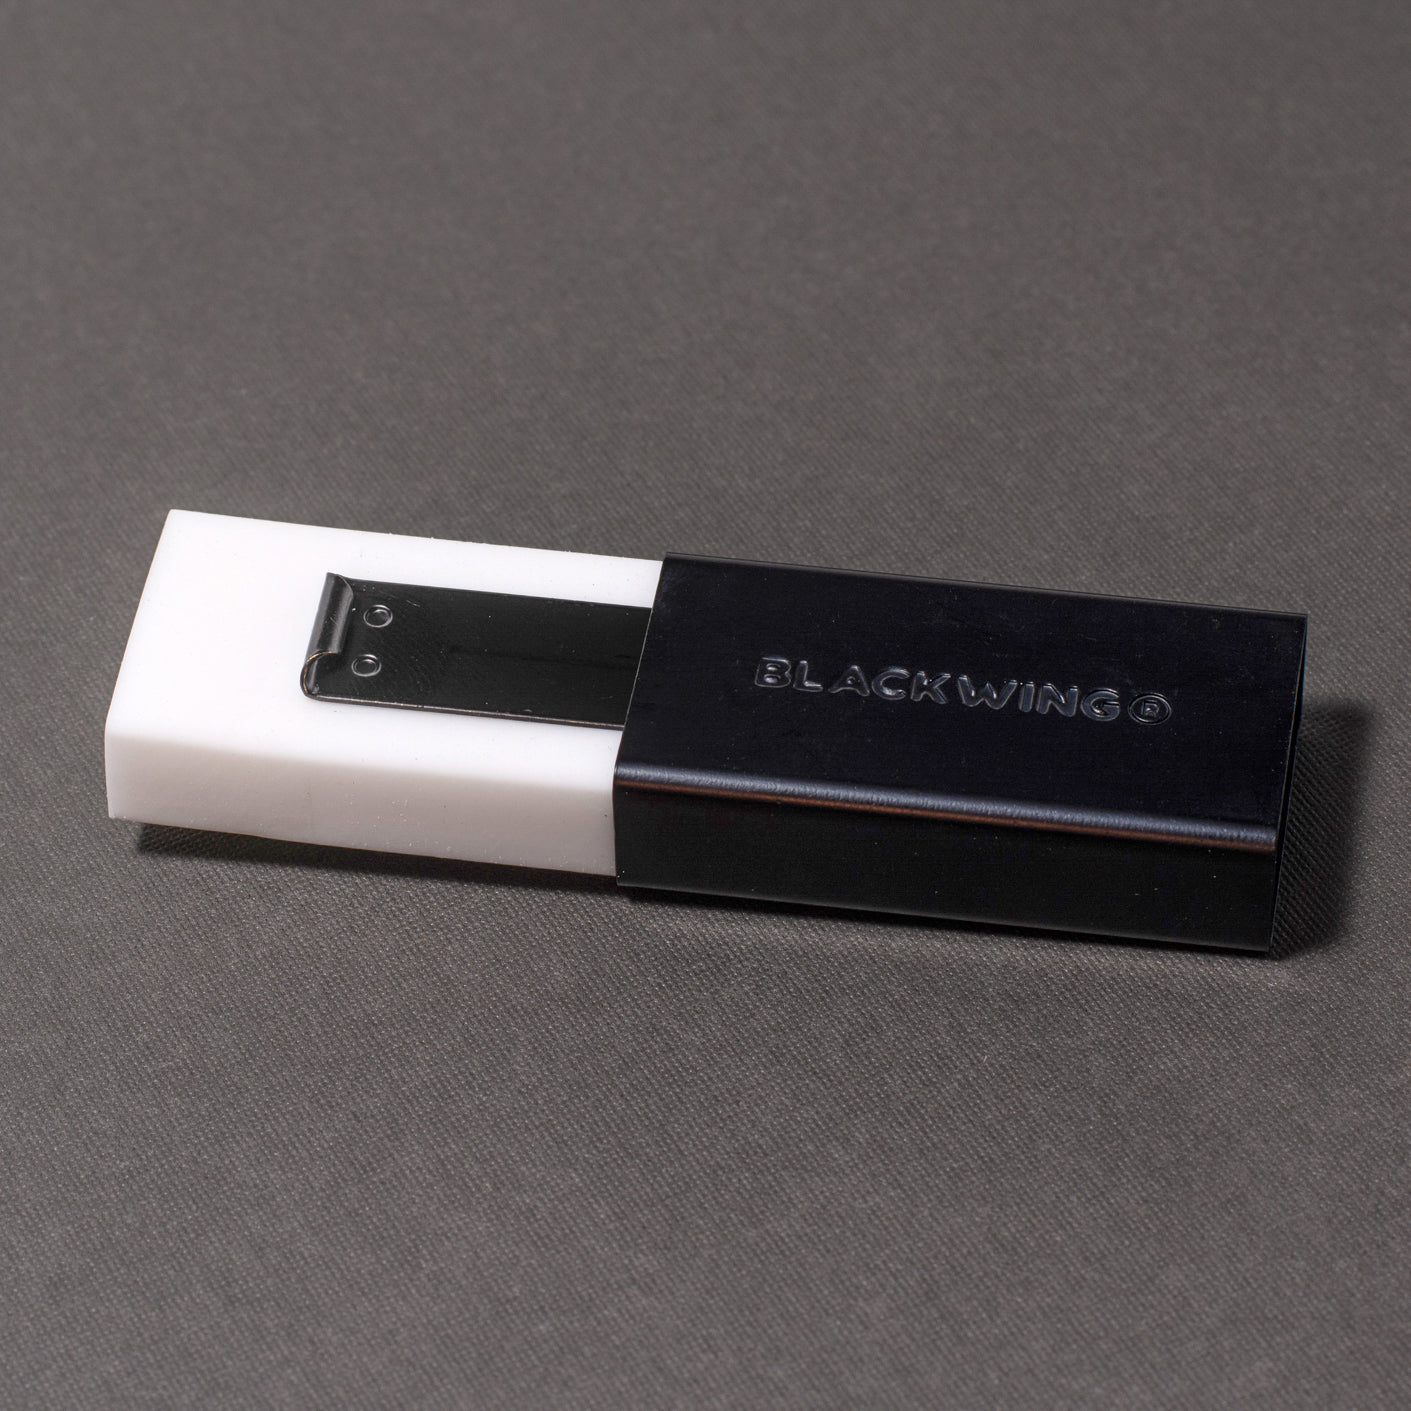 A Blackwing Soft Handheld Eraser + Holder sitting on a grey surface.